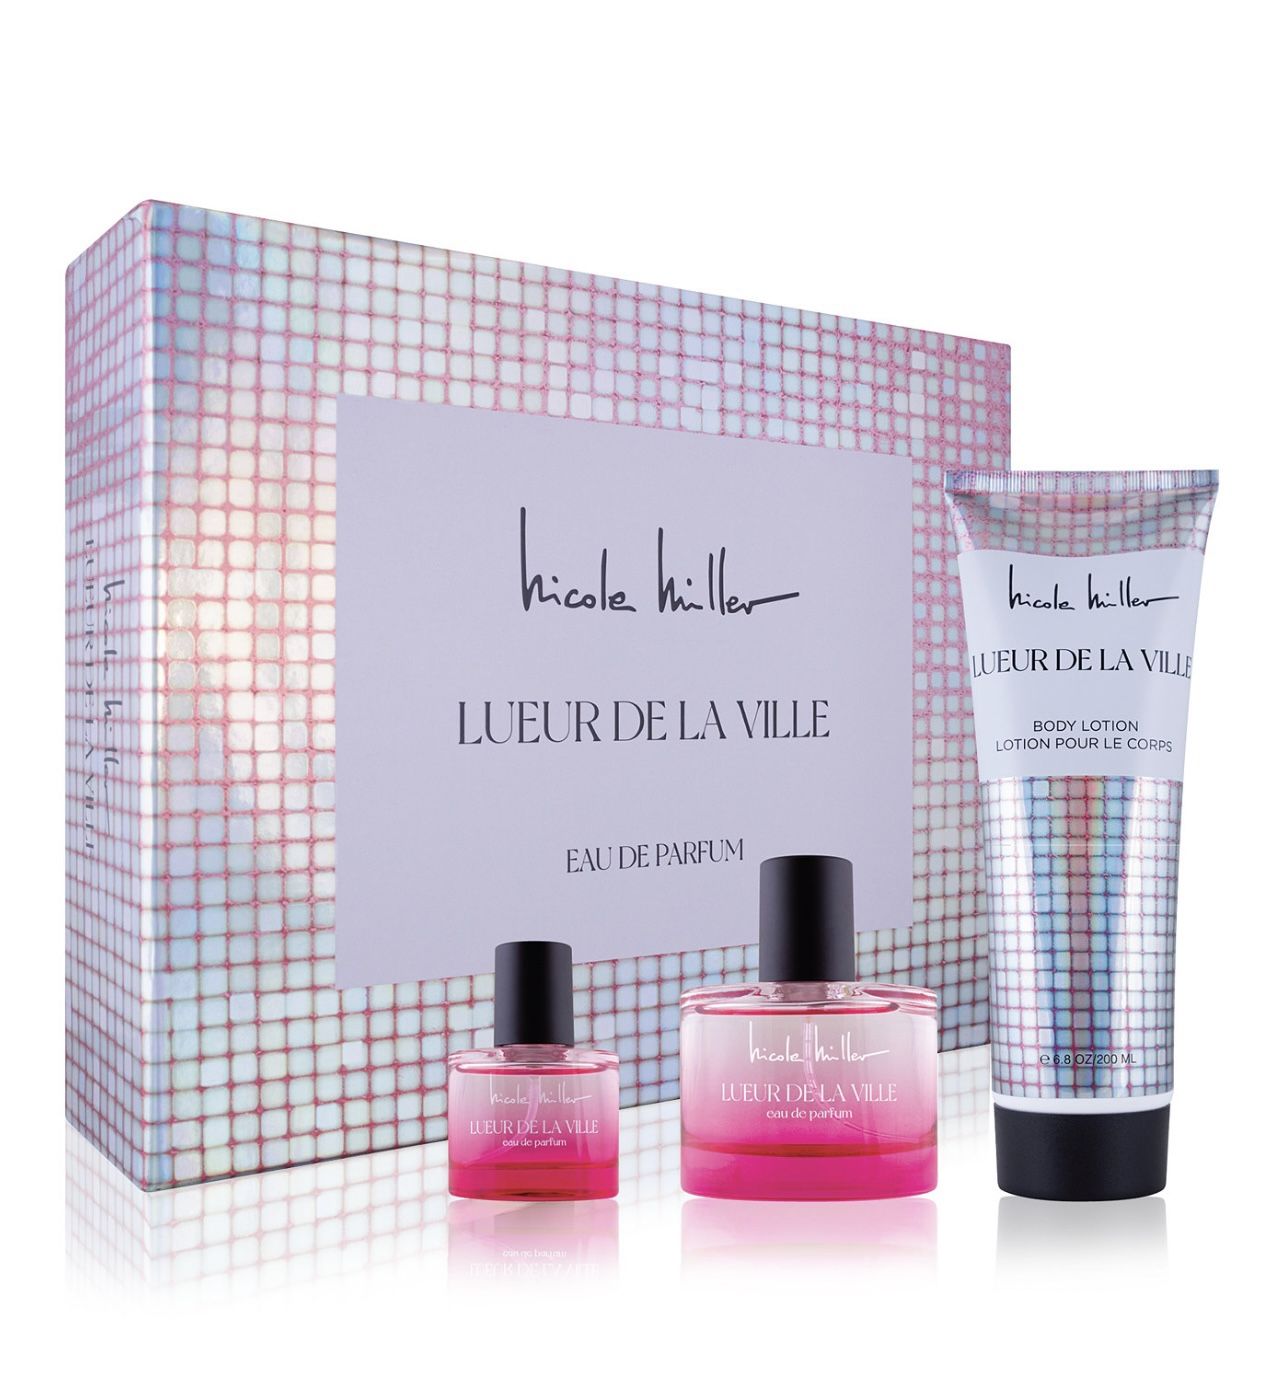 REDUCED ~ New Nicole Miller 3-Pc. Lueur de la Ville Eau de Parfum Gift Set